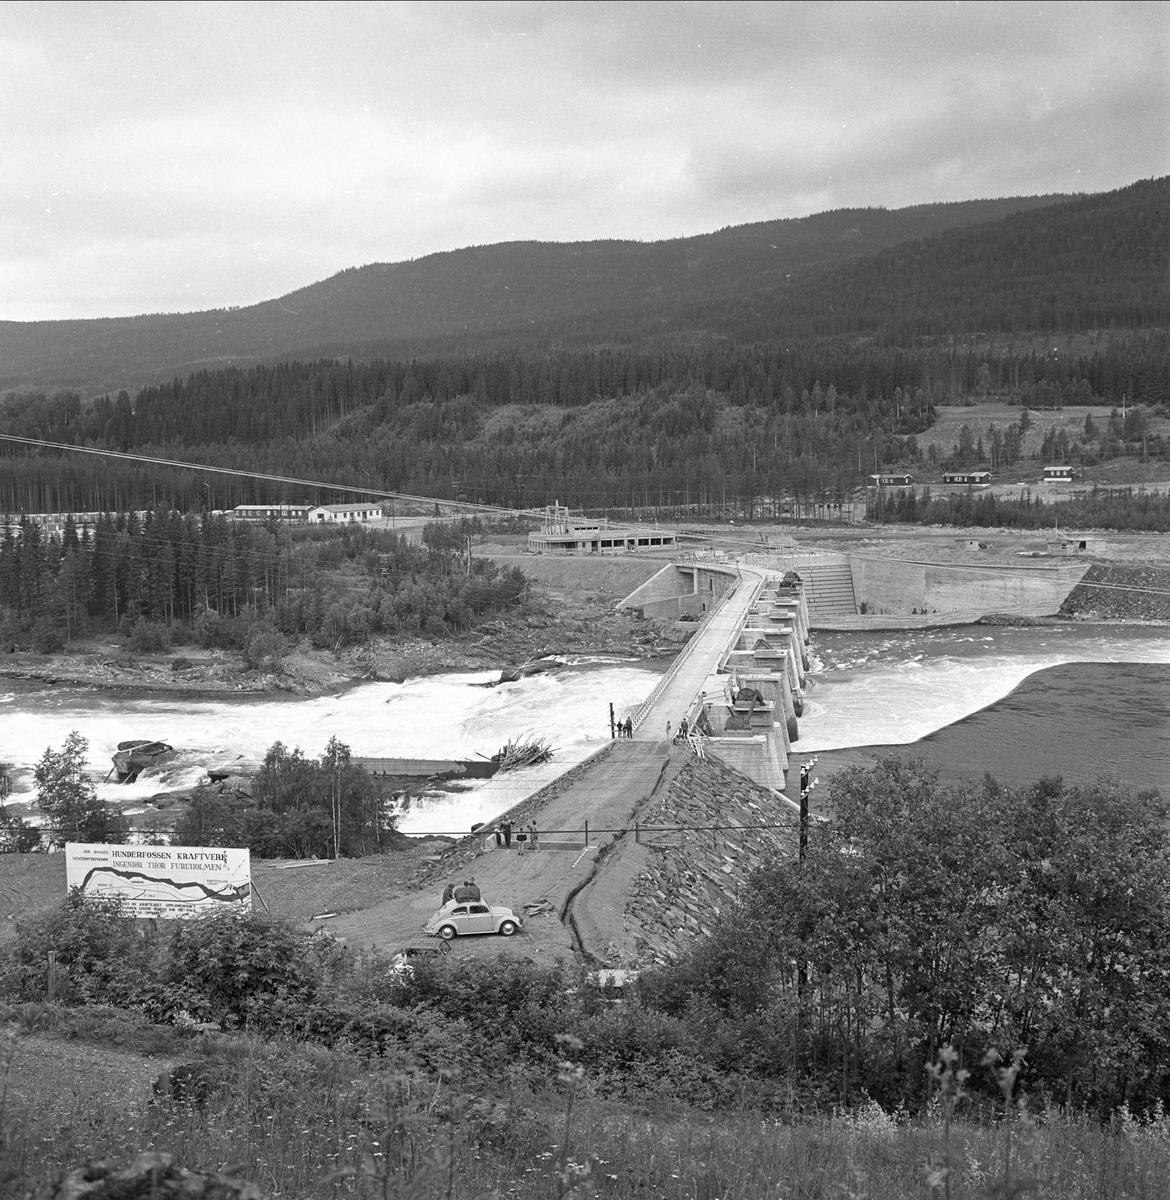 Utbygging av Hunderfossen kraftverk, Gudbrandsdalen, Lillehammer, Oppland, august 1962. Oversiktsbilde av elv, anlegg/bro og elva.